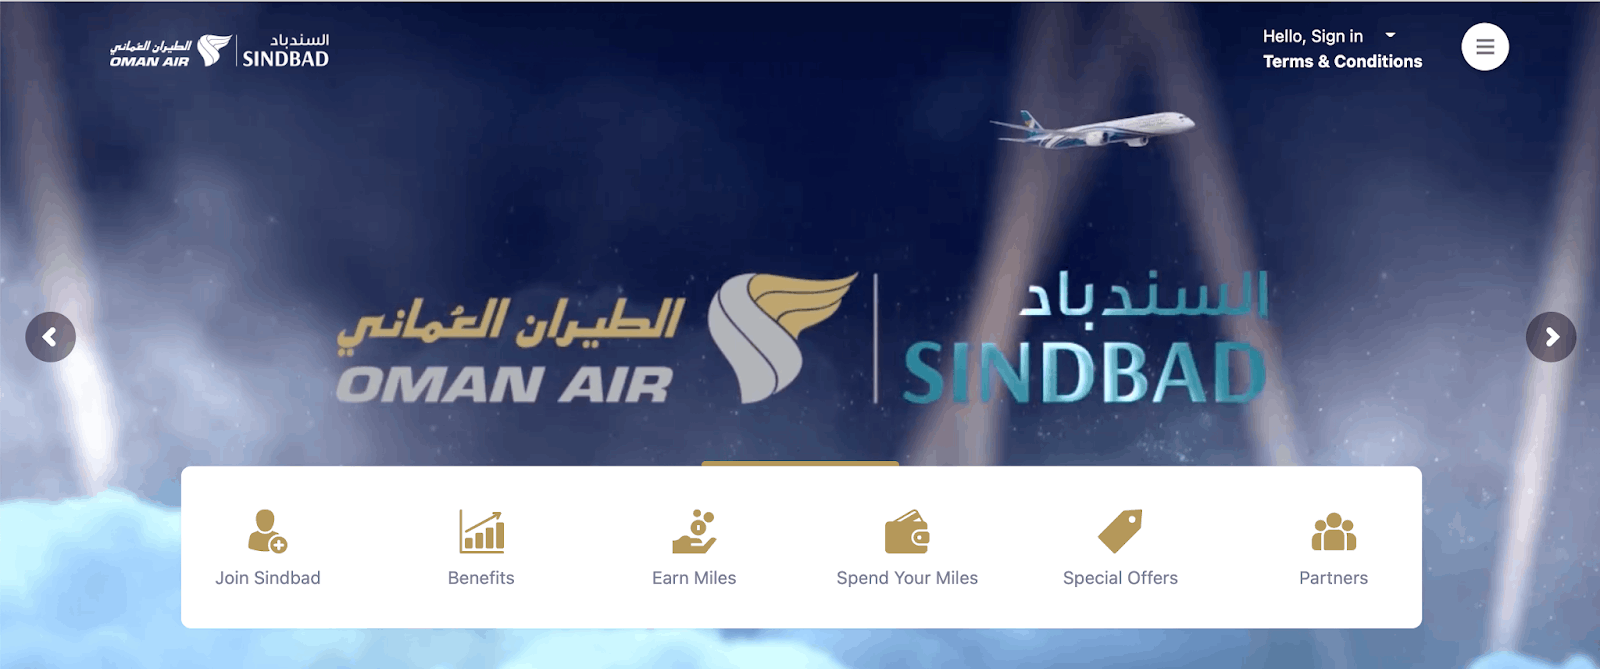 Oman Air App - Book a New Flight